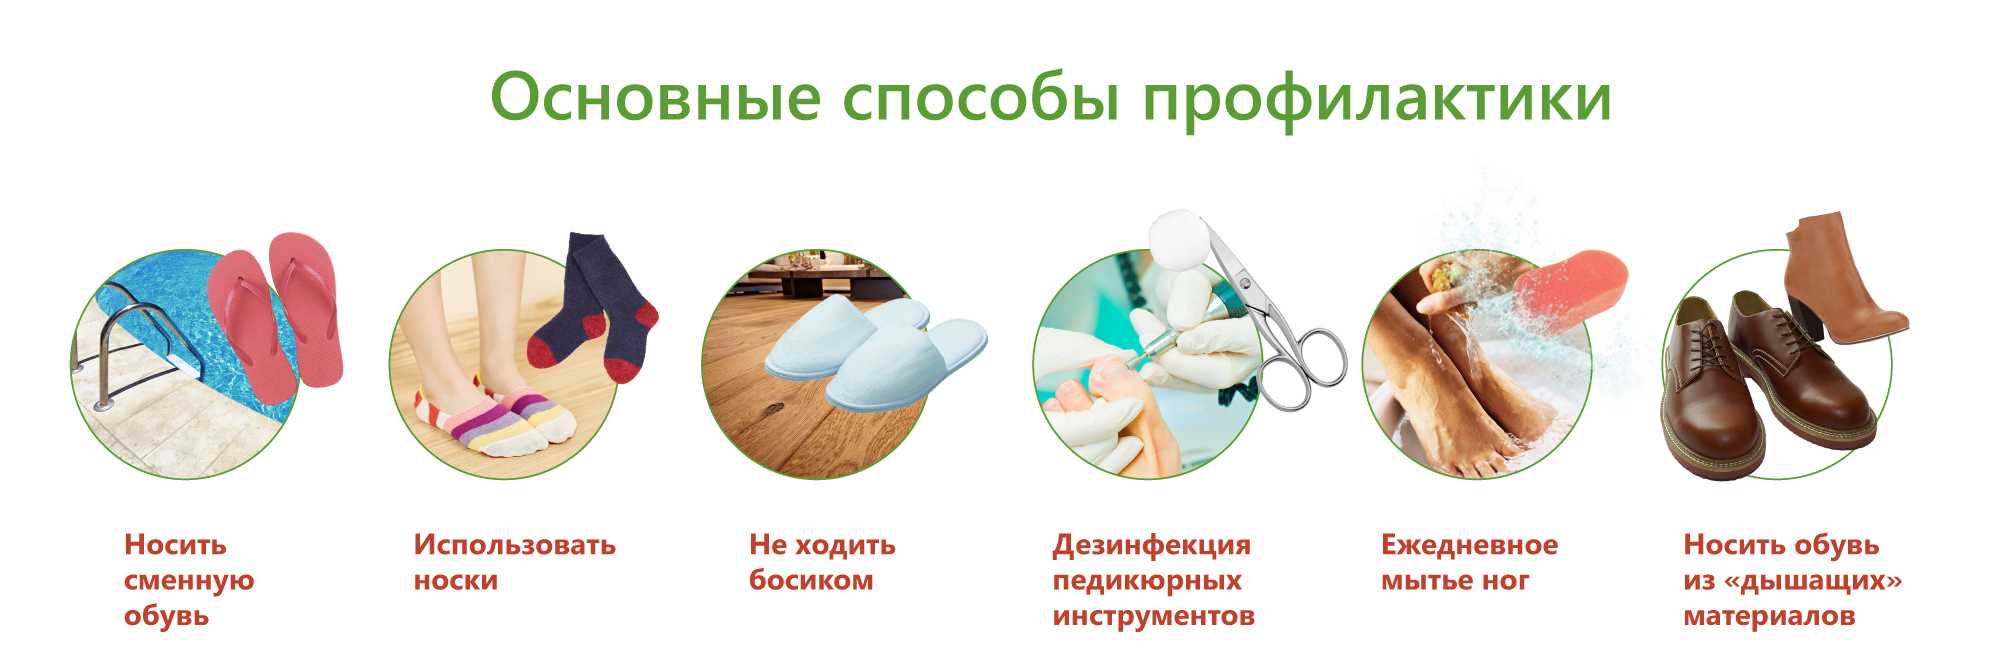 Меры профилактики микозов